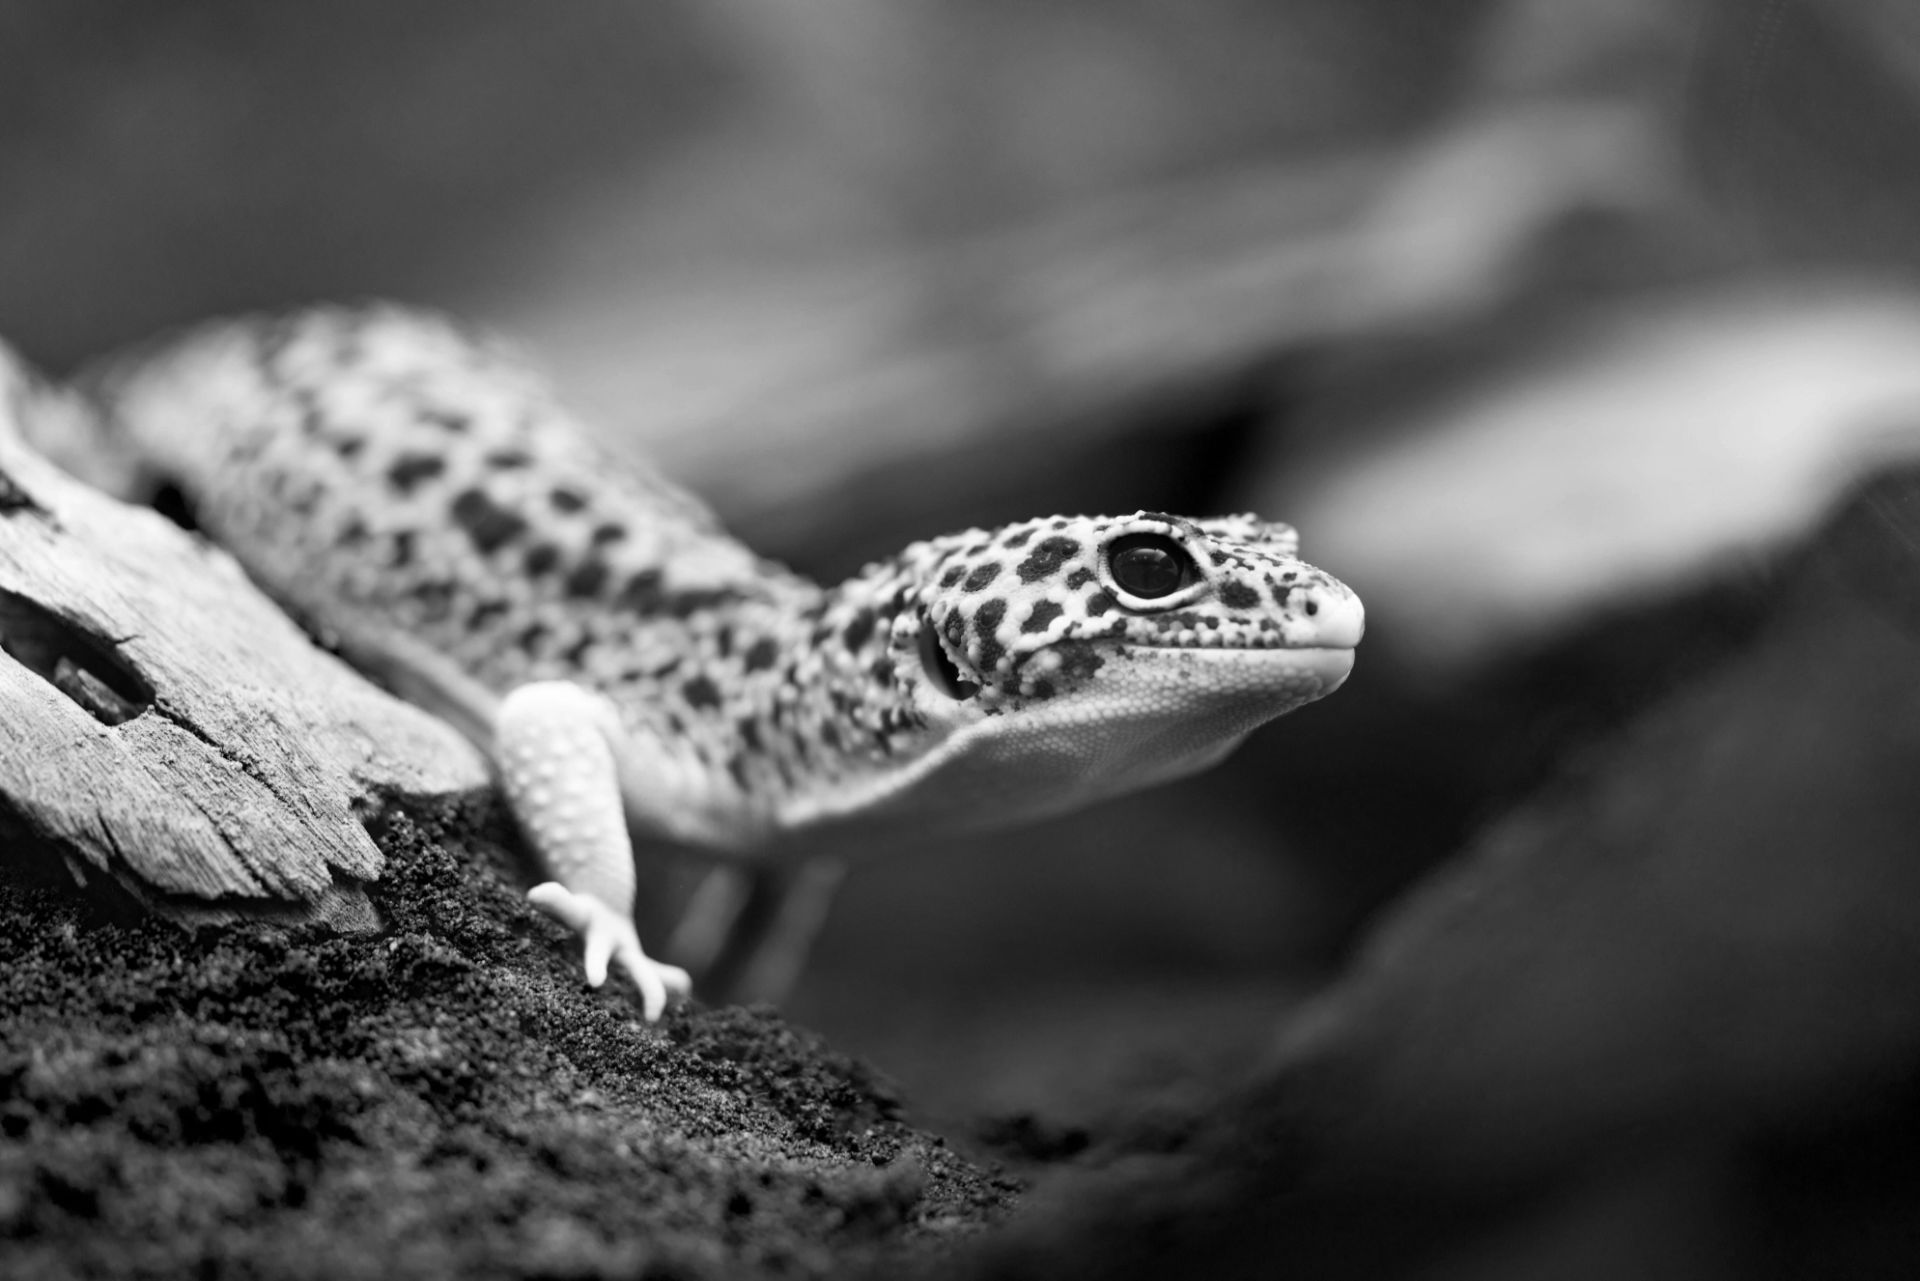 Aufnahme eines Geckos